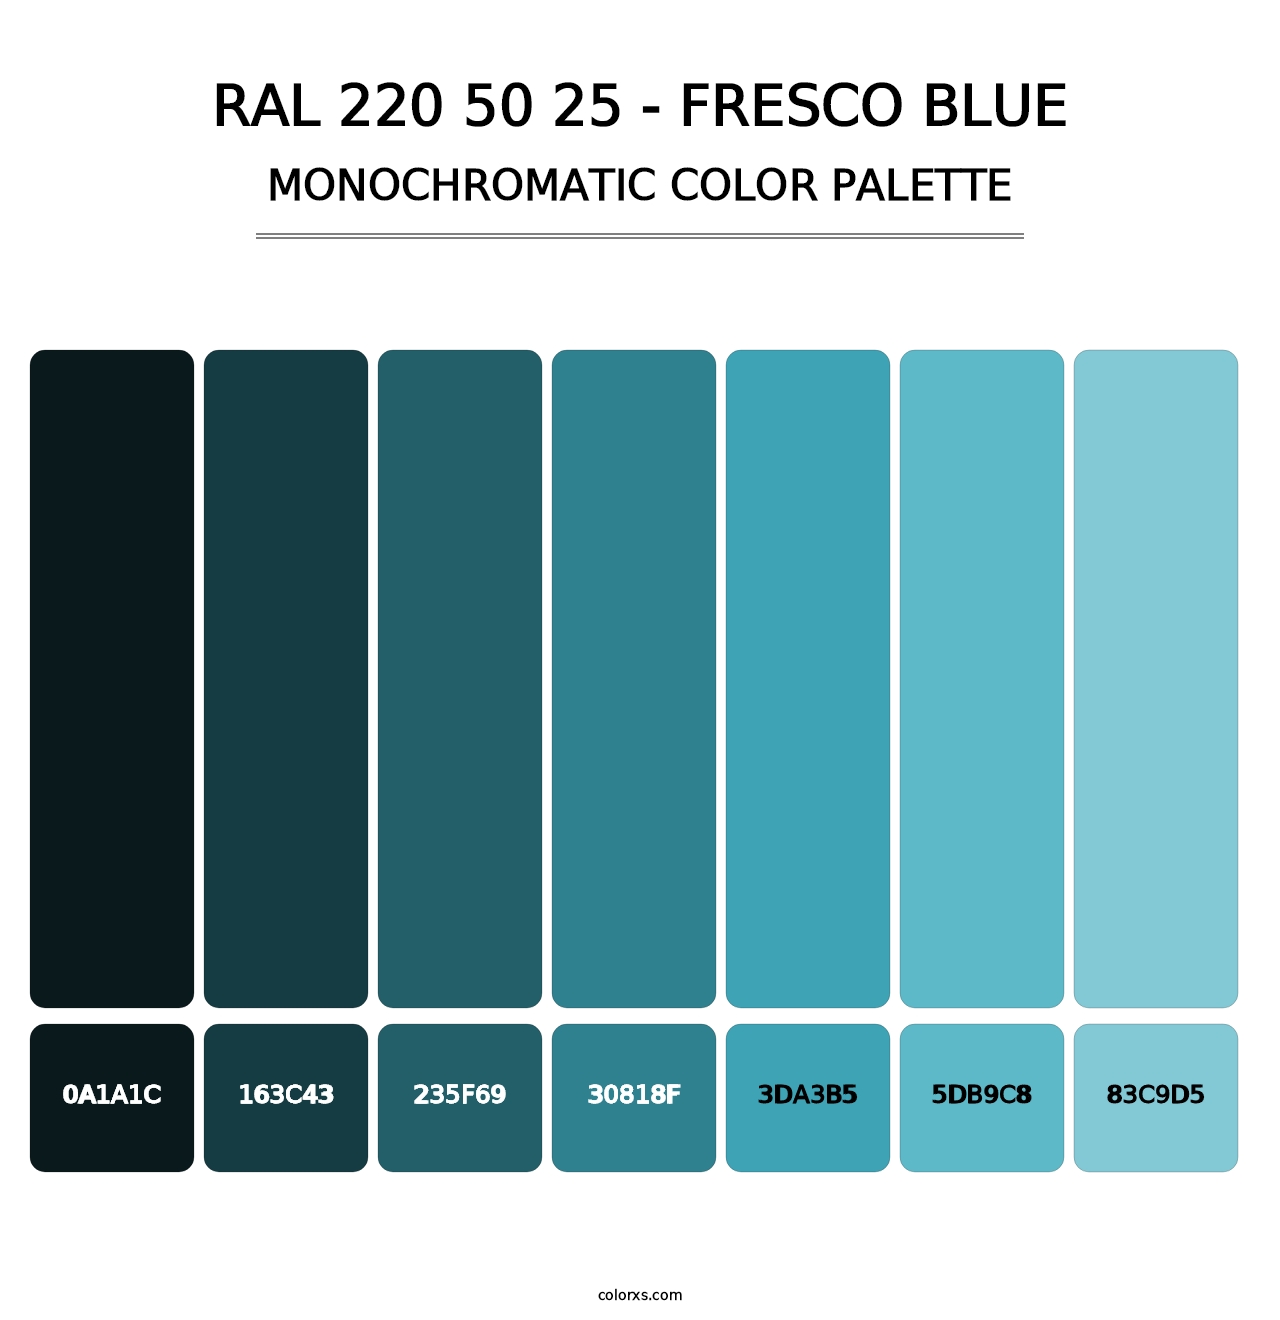 RAL 220 50 25 - Fresco Blue - Monochromatic Color Palette